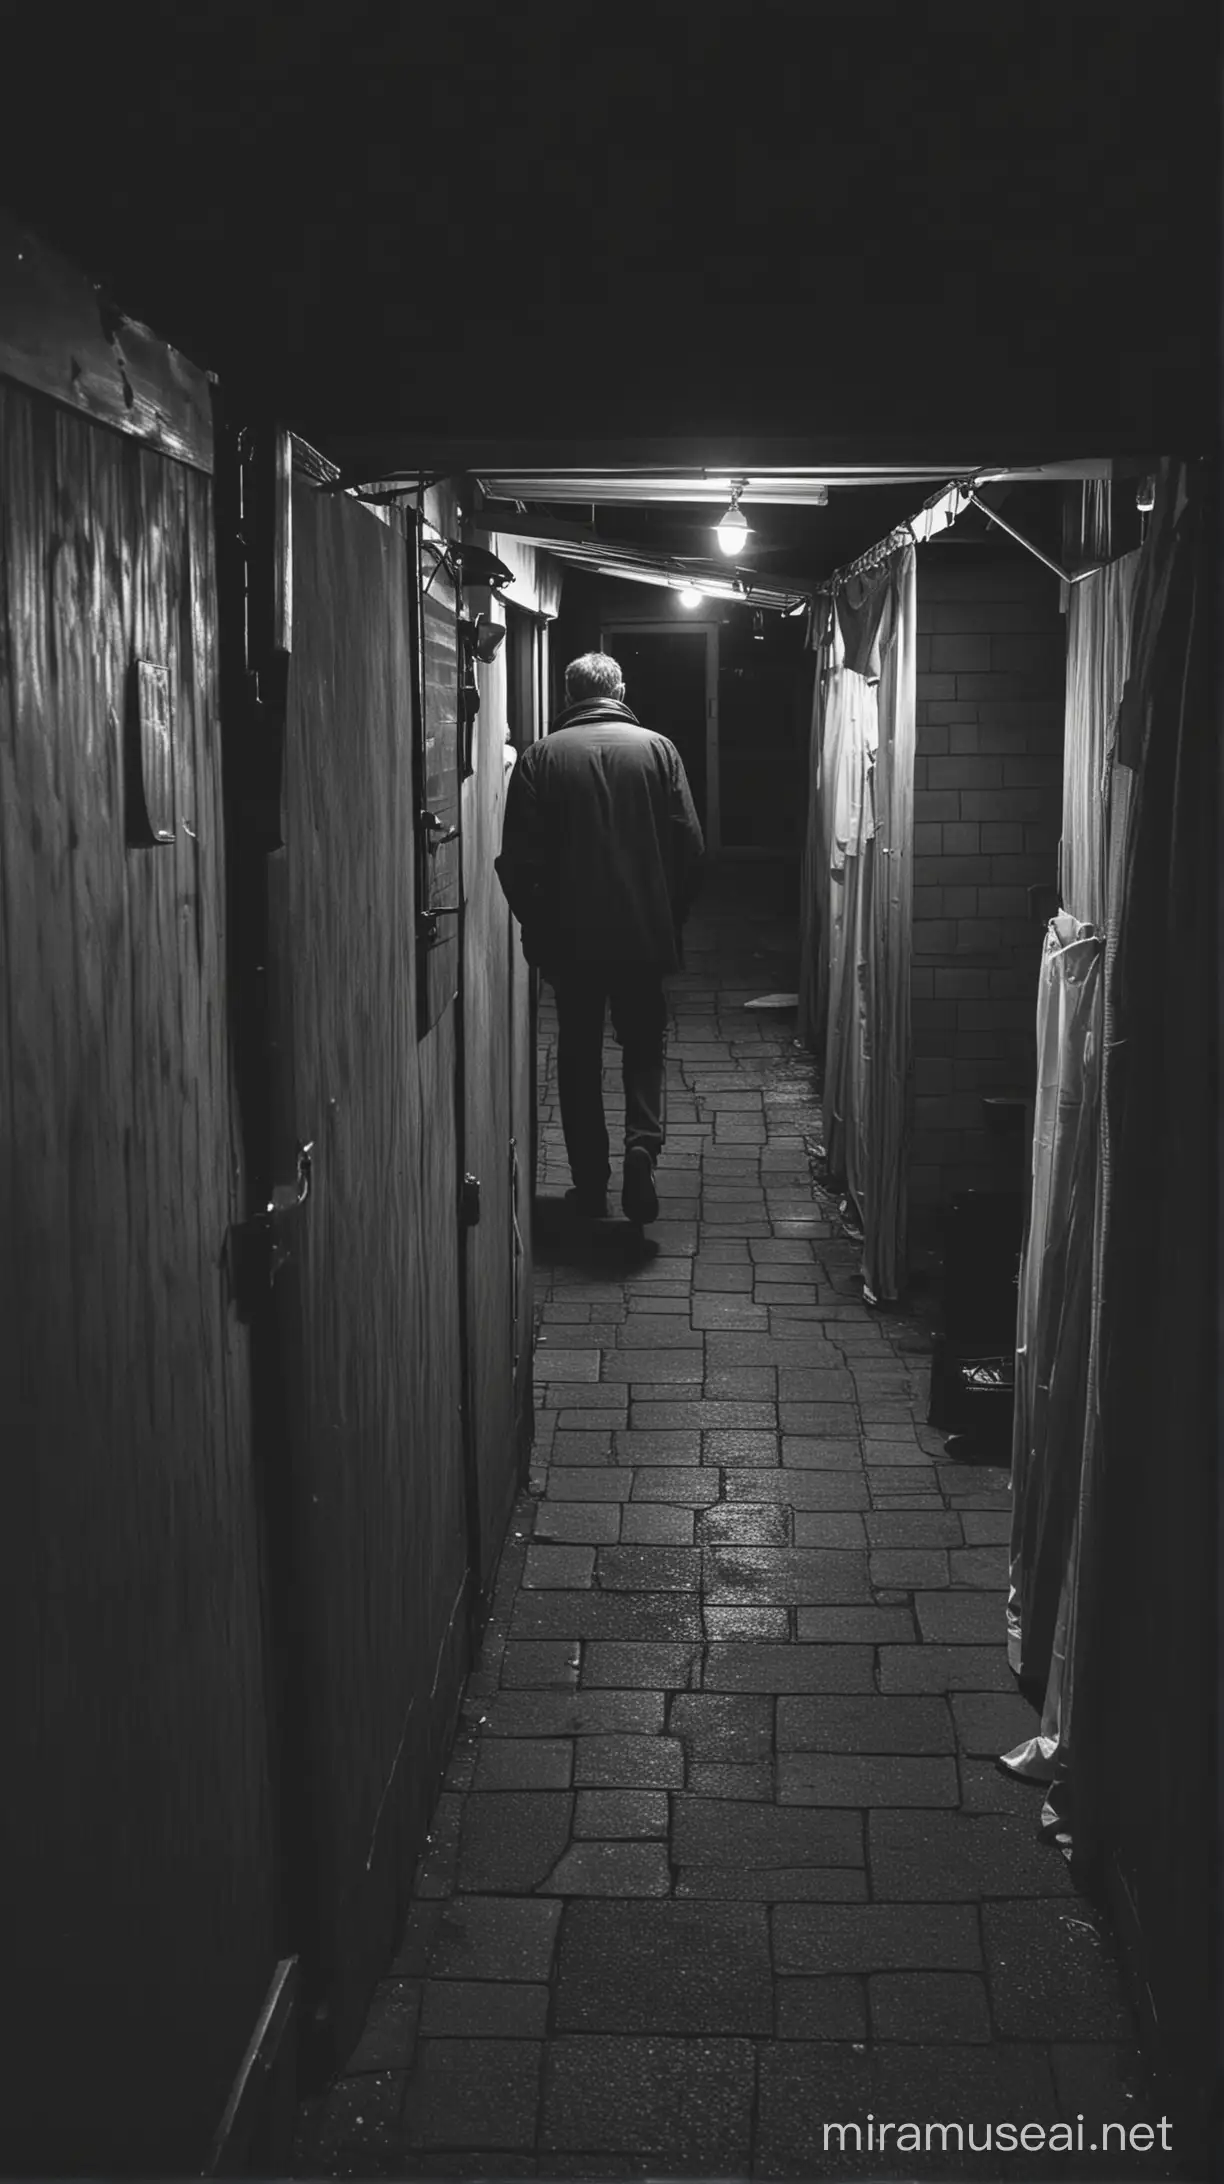 Gambar warung remang-remang di tengah malam dengan seorang ayah sedang berjalan menuju toilet.